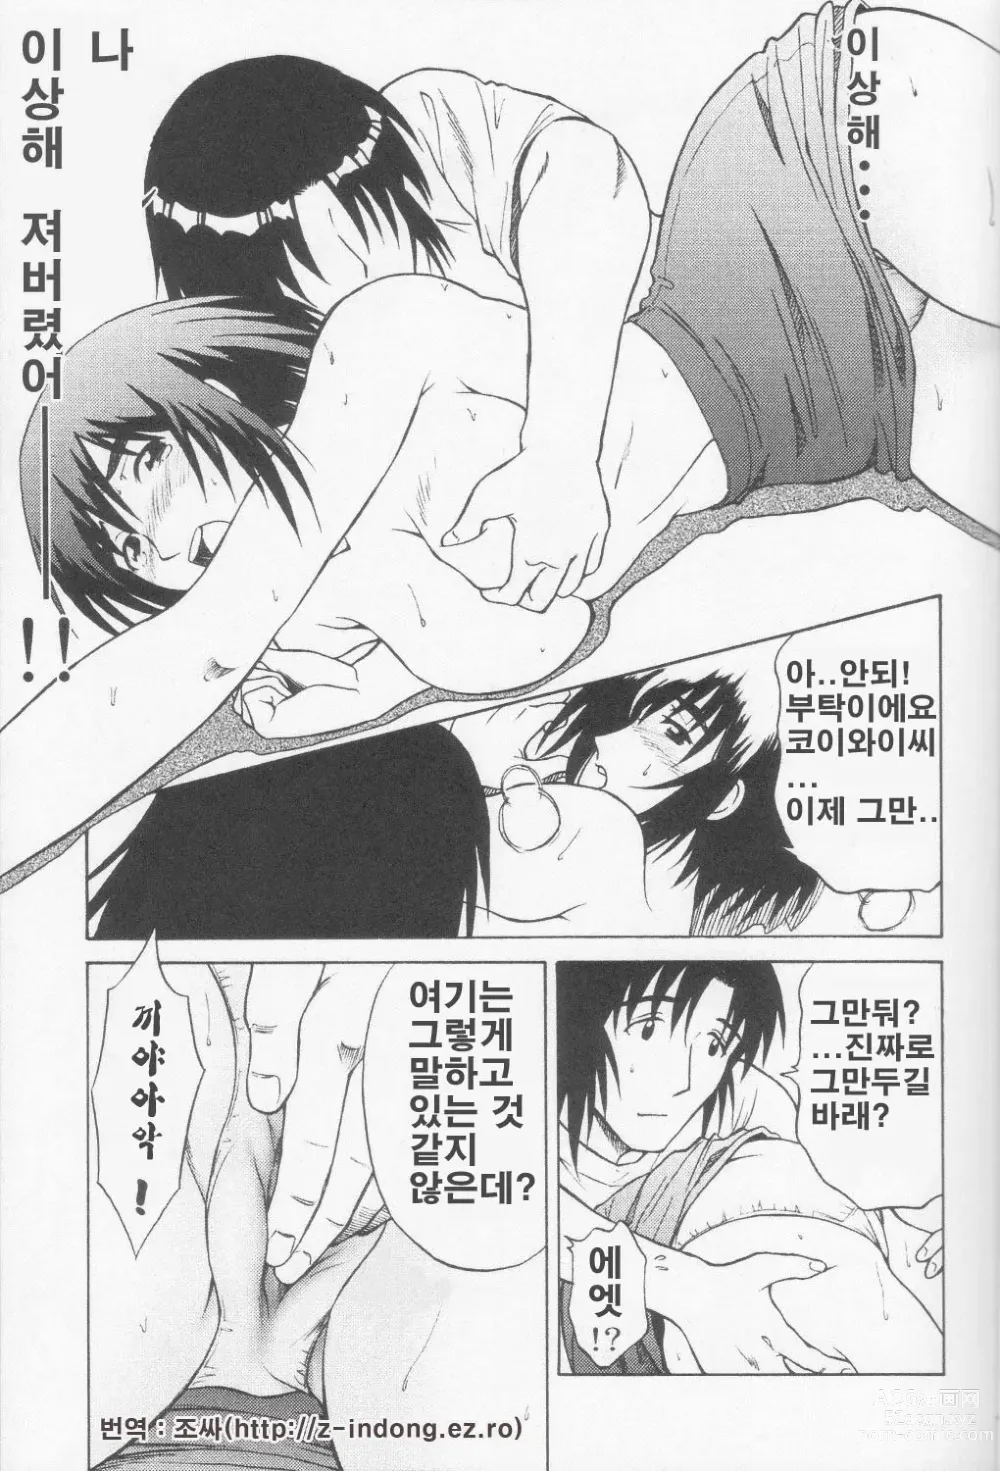 Page 16 of doujinshi Tou-chan xx no tekidatta